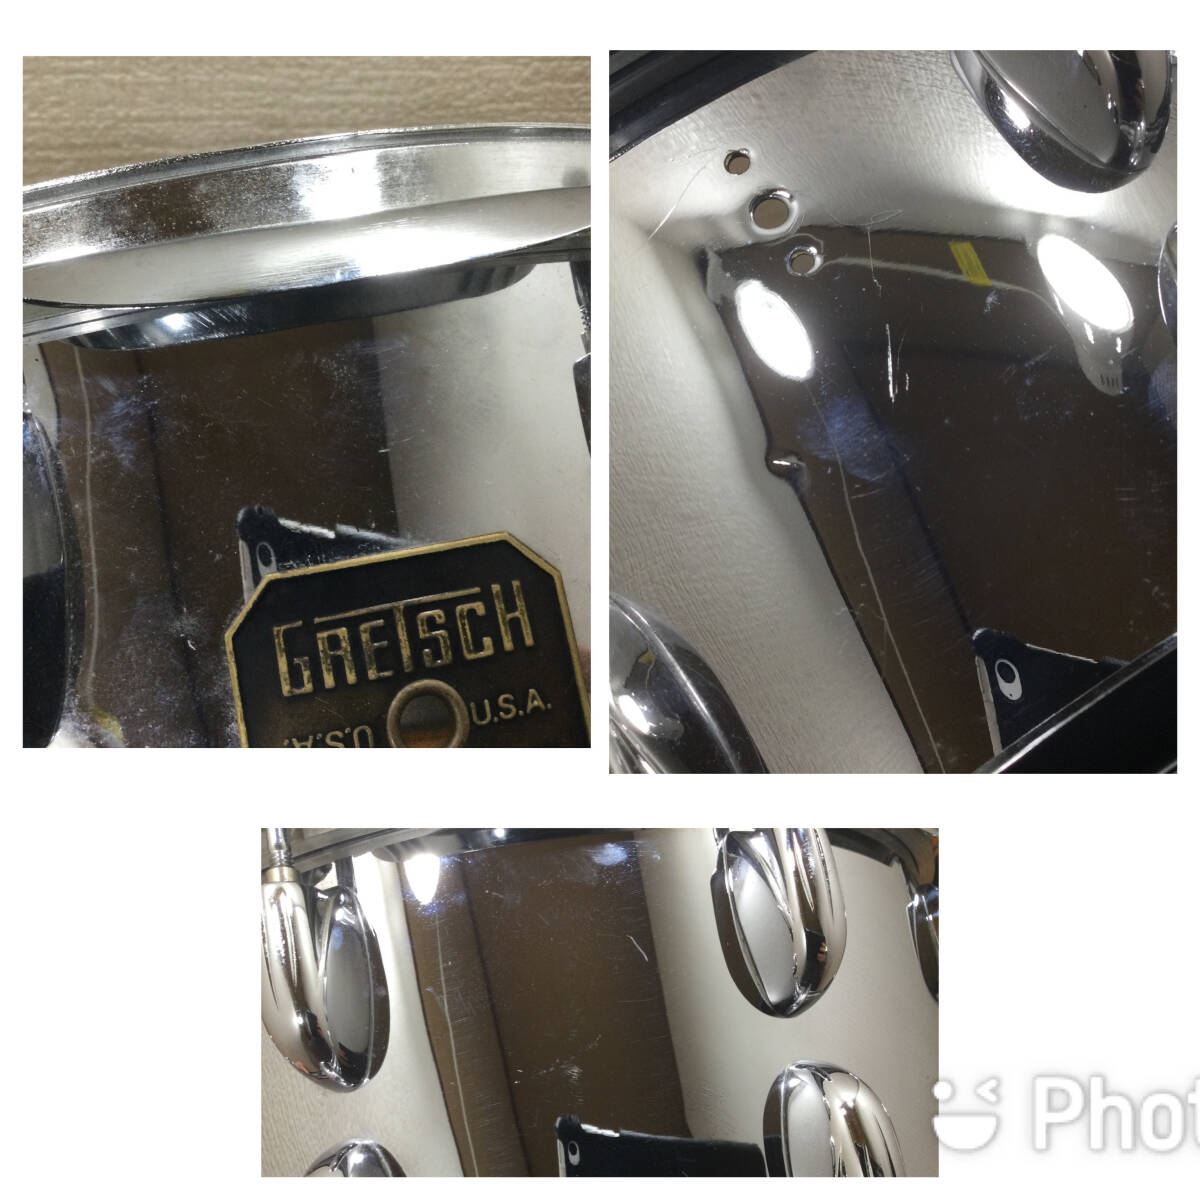 Gresth スネア 《G 4166 14“×6” 》COB クロームオーバーブラス製、シェル凹みあり(機能&音色に影響なし) スネアドラムの画像6